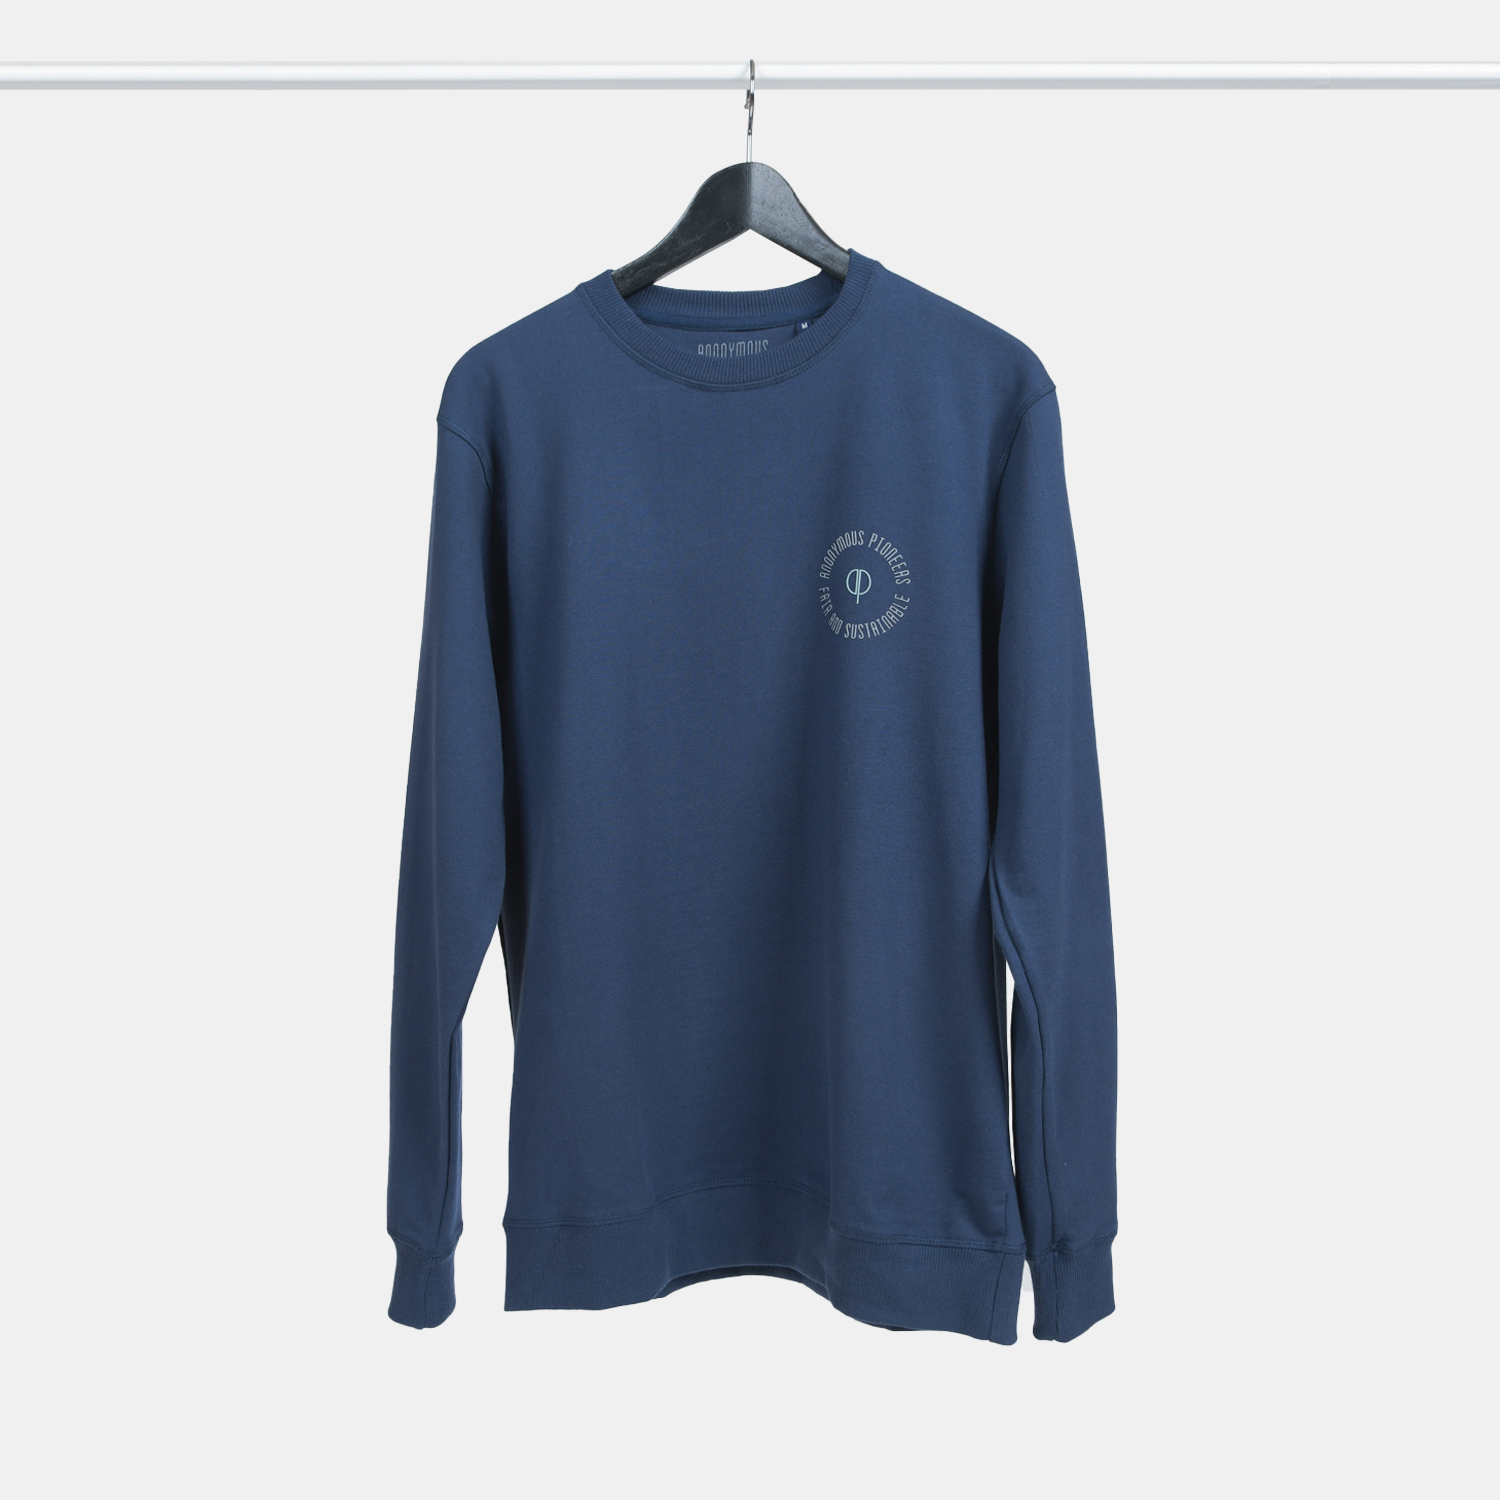 Genanvendt sweatshirt i navy med print fra A-PIONEER